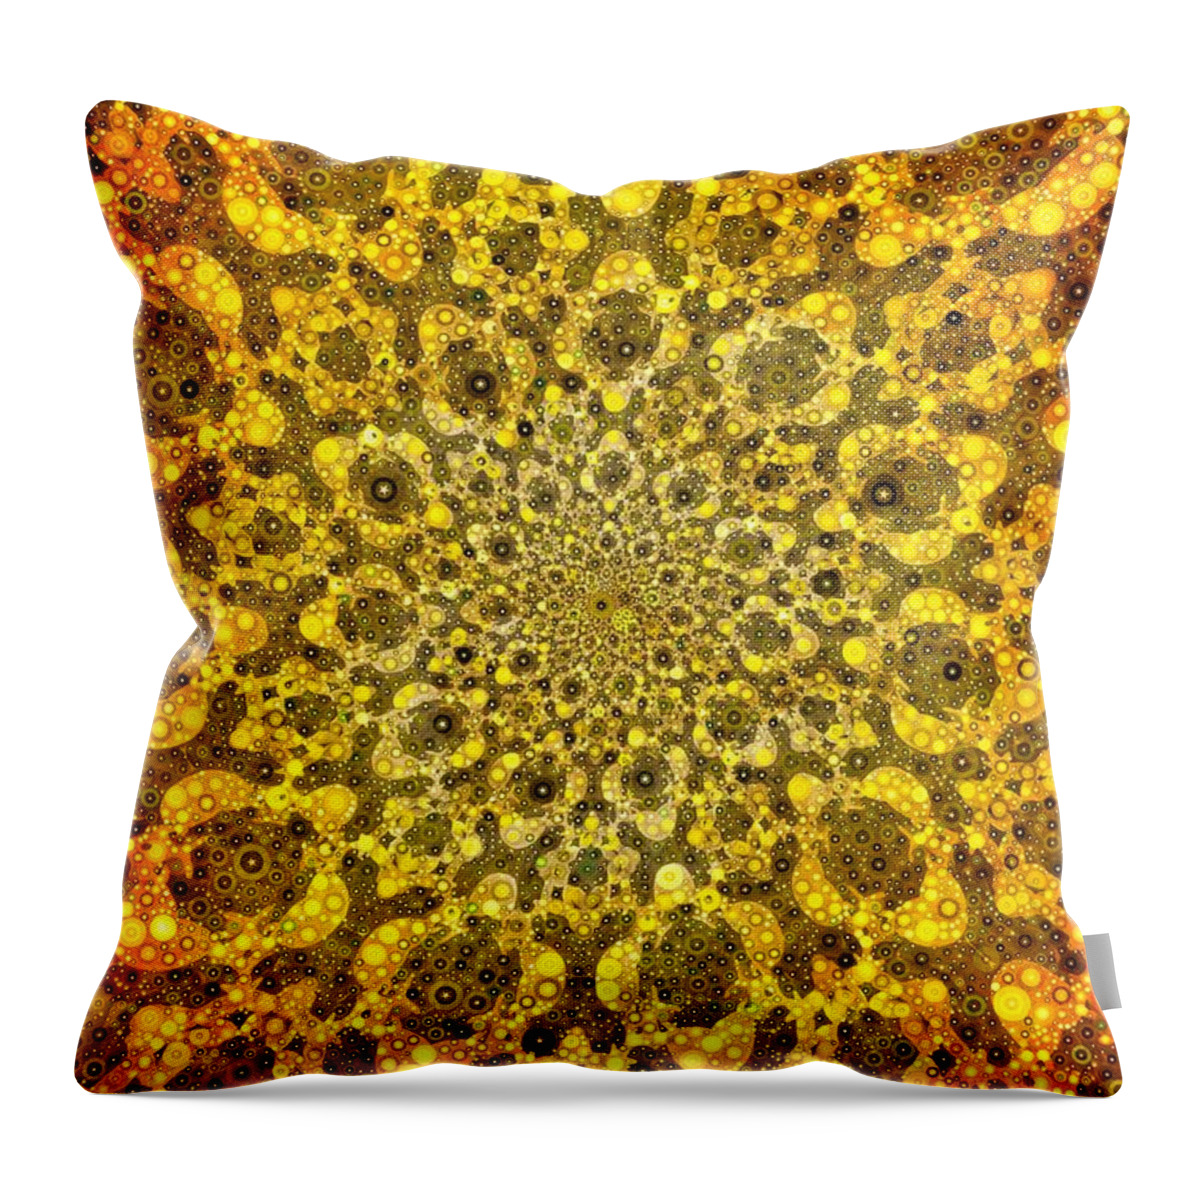 Sun Throw Pillow featuring the digital art Sun Burst #1 by Nick Heap